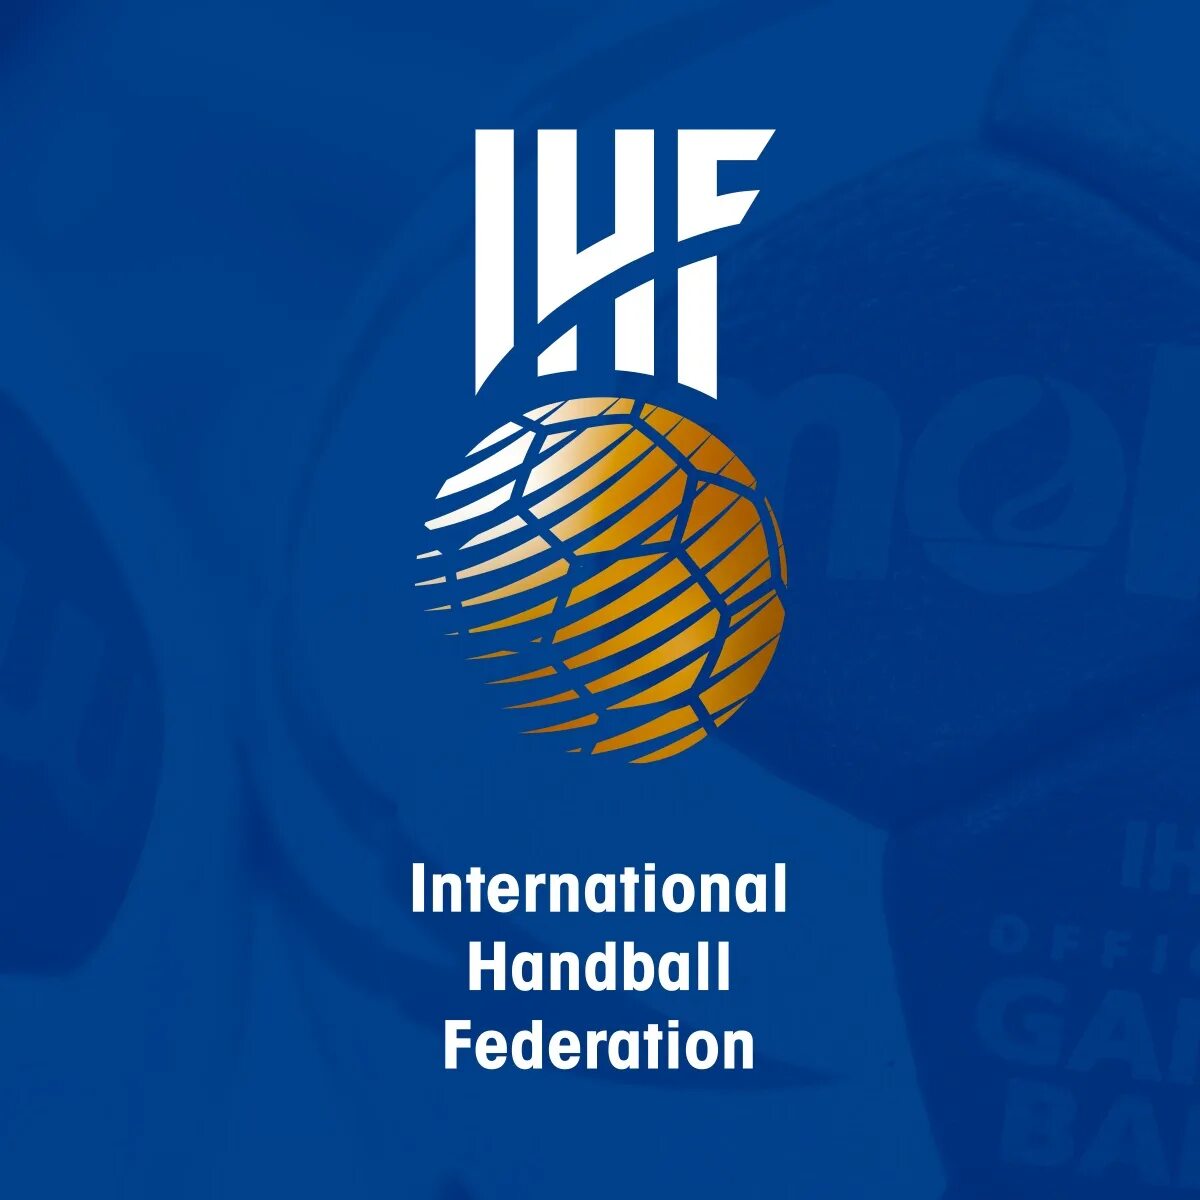 Международная любительская федерация. IHF. Федерация гандбола логотип. Гандбол фото. International Handball Federation logo PNG.